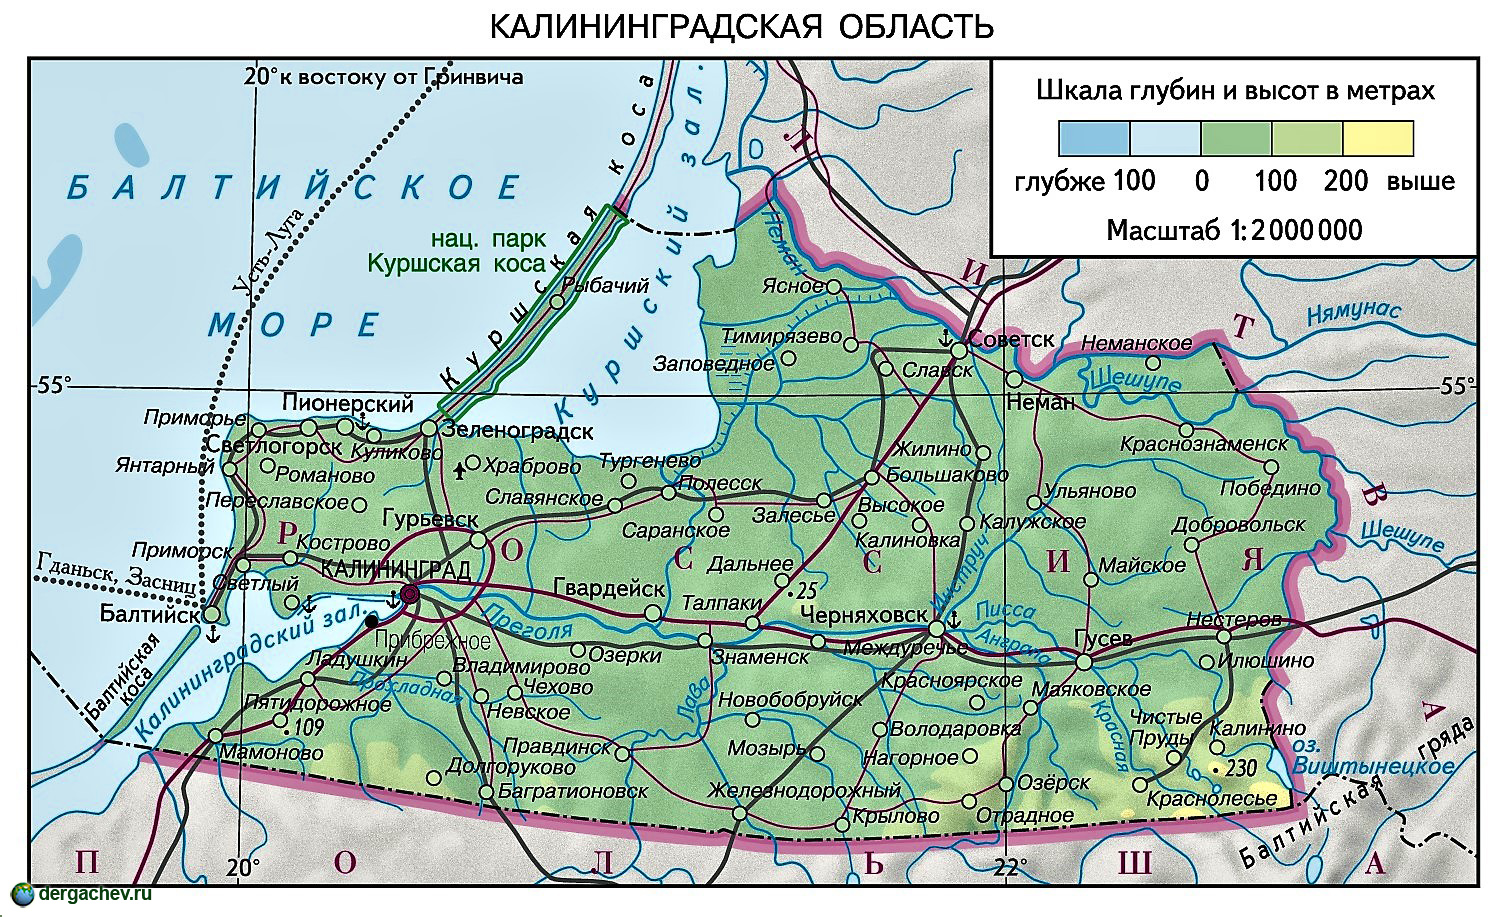 75 лет назад была образована Калининградская область